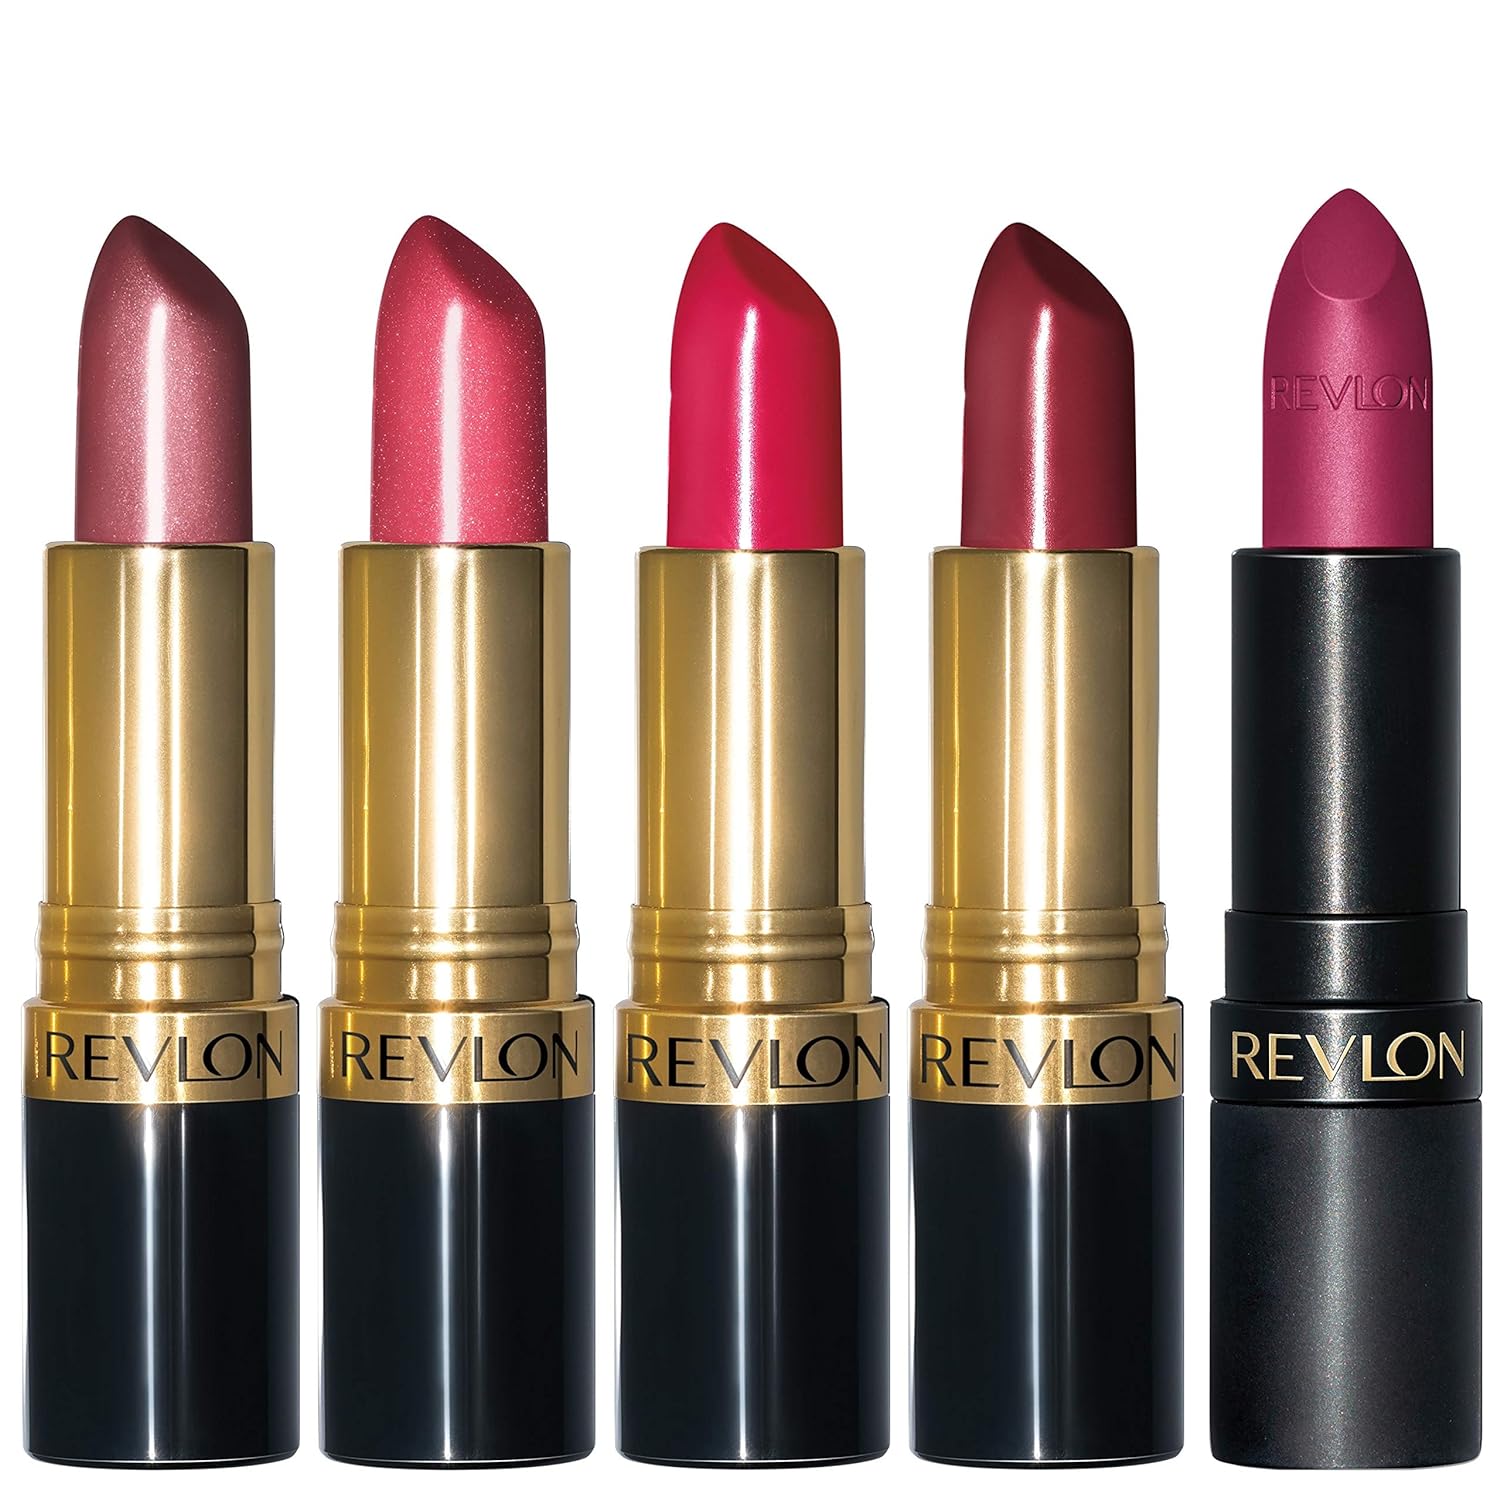 Revlon Lipstick Set, Super Lustrous 5 Piece Gift Set